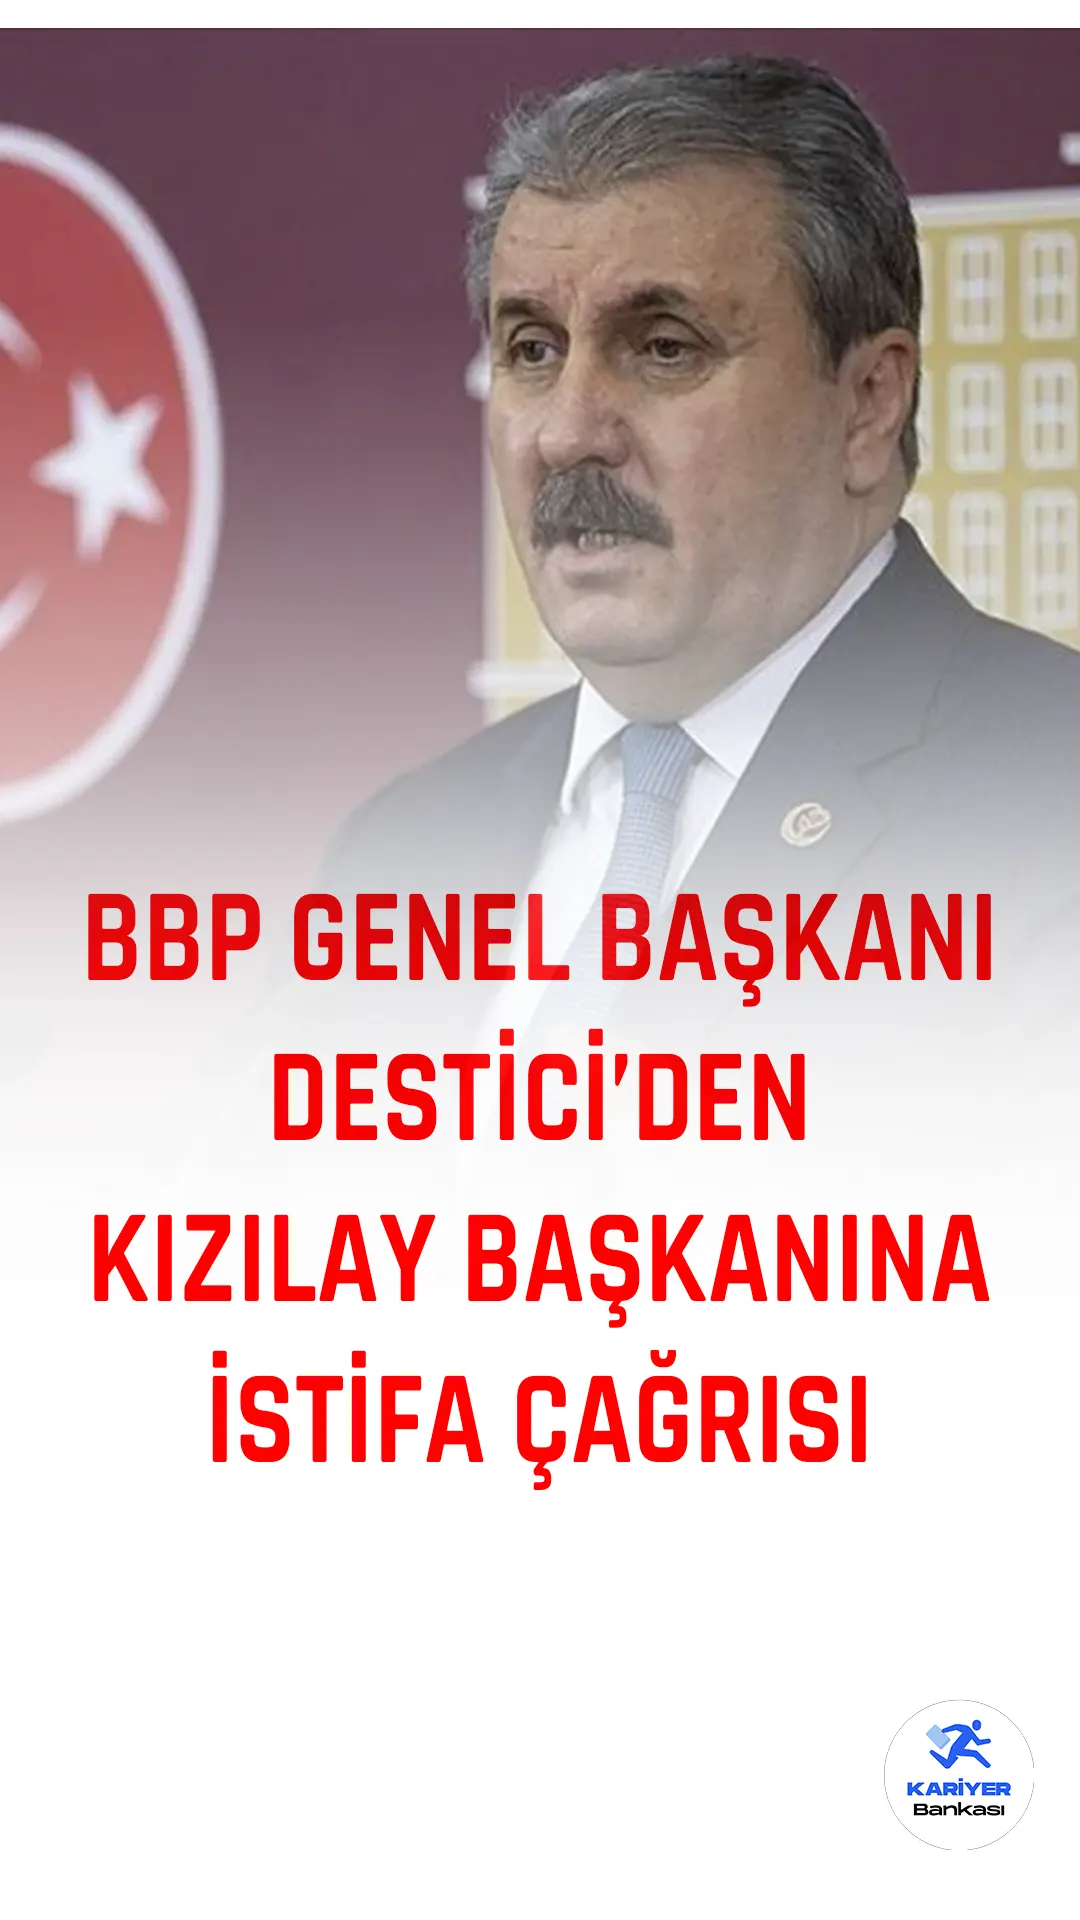 BBP Genel Başkanı Mustafa Destici'den Kızılay Başkanına istifa çağrıları sürüyor.